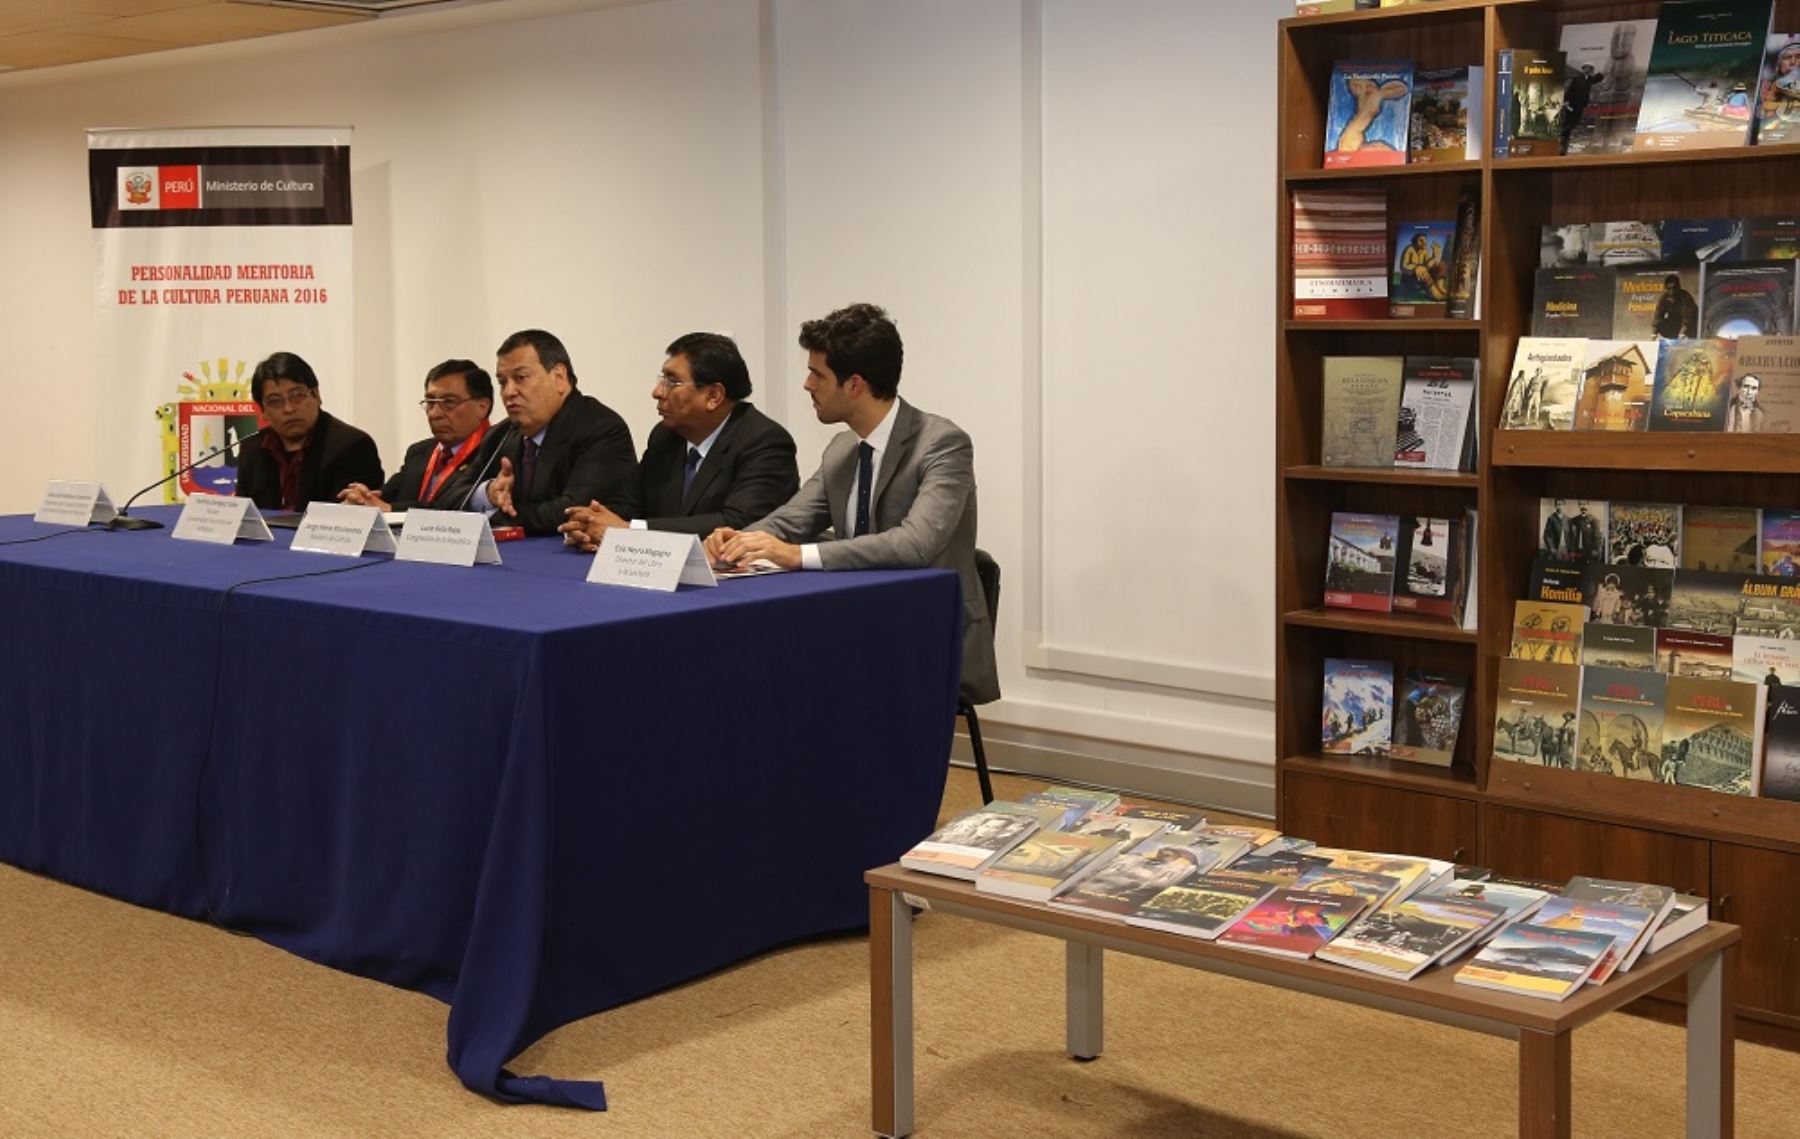 En mérito a su acertada política editorial y por su valioso aporte a la cultura peruana a través de sus destacadas publicaciones, el Ministerio de Cultura distinguió a la Universidad Nacional del Altiplano de Puno como Personalidad Meritoria de la Cultura.